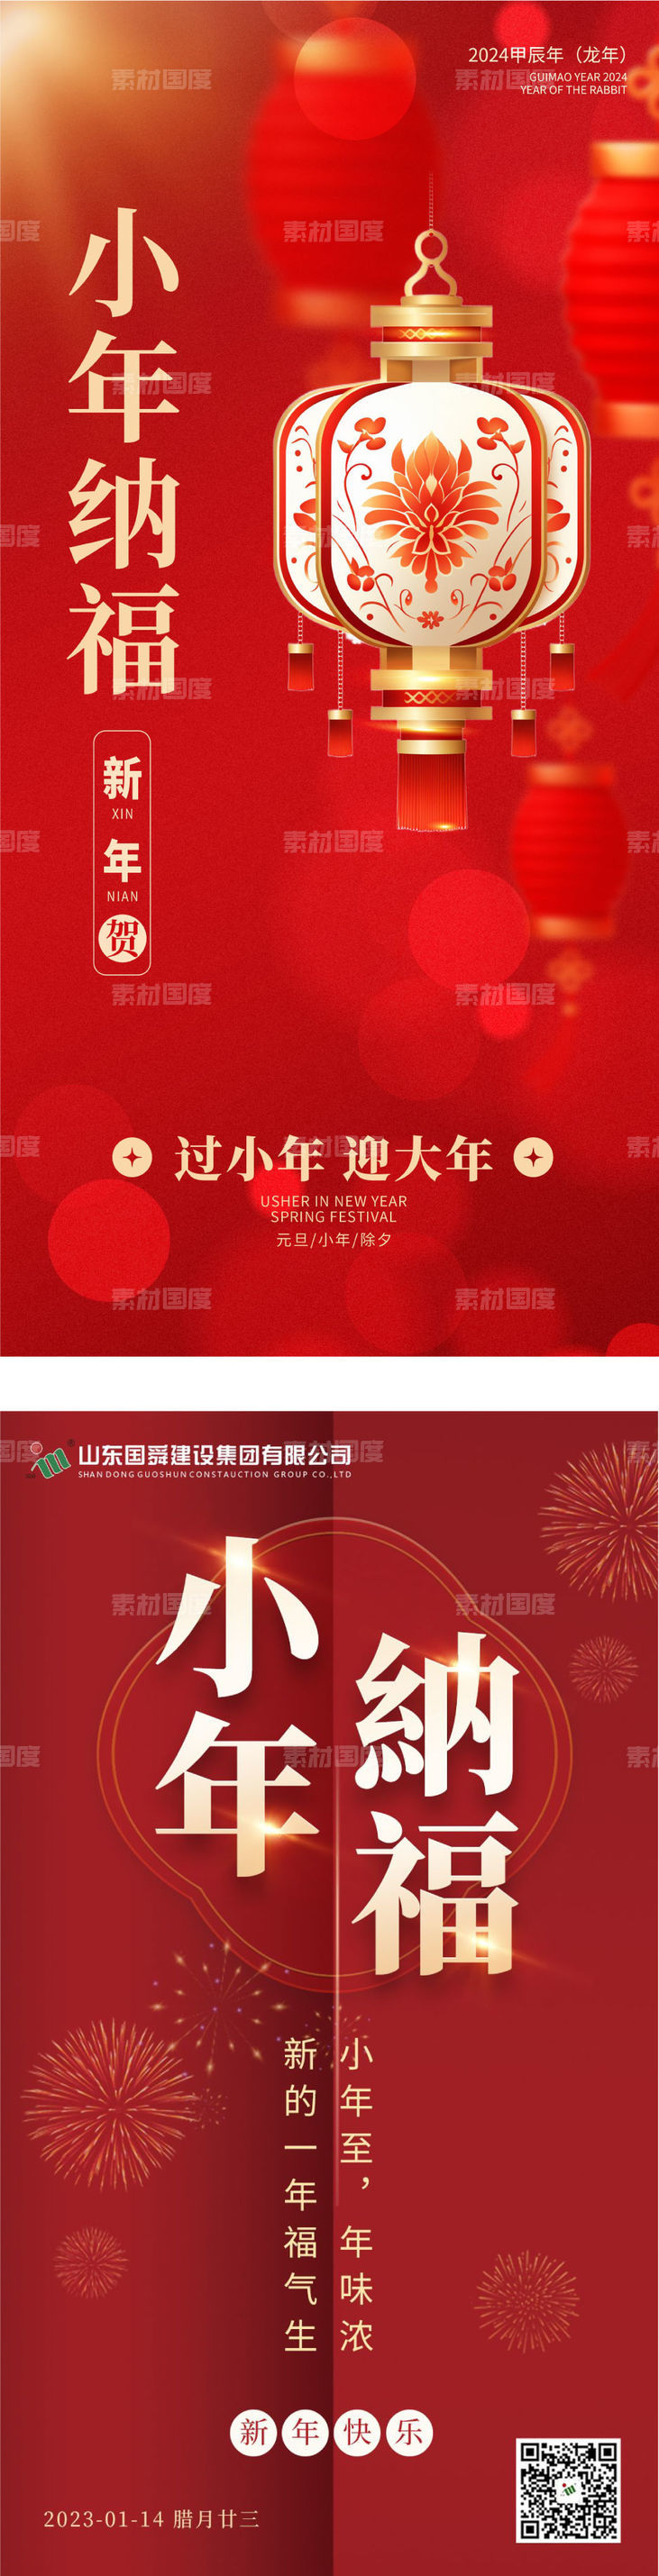 贺小年传统节日海报